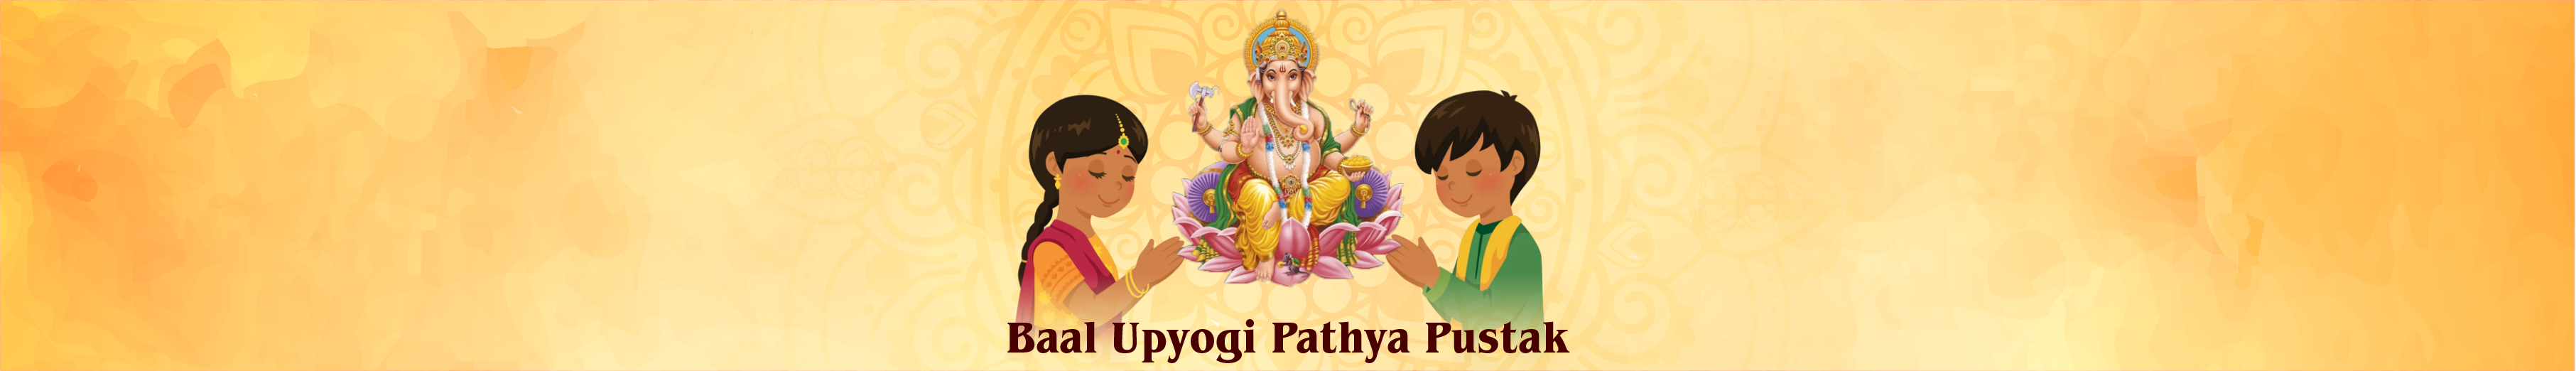 Baal Upyogi Pathya Pustak